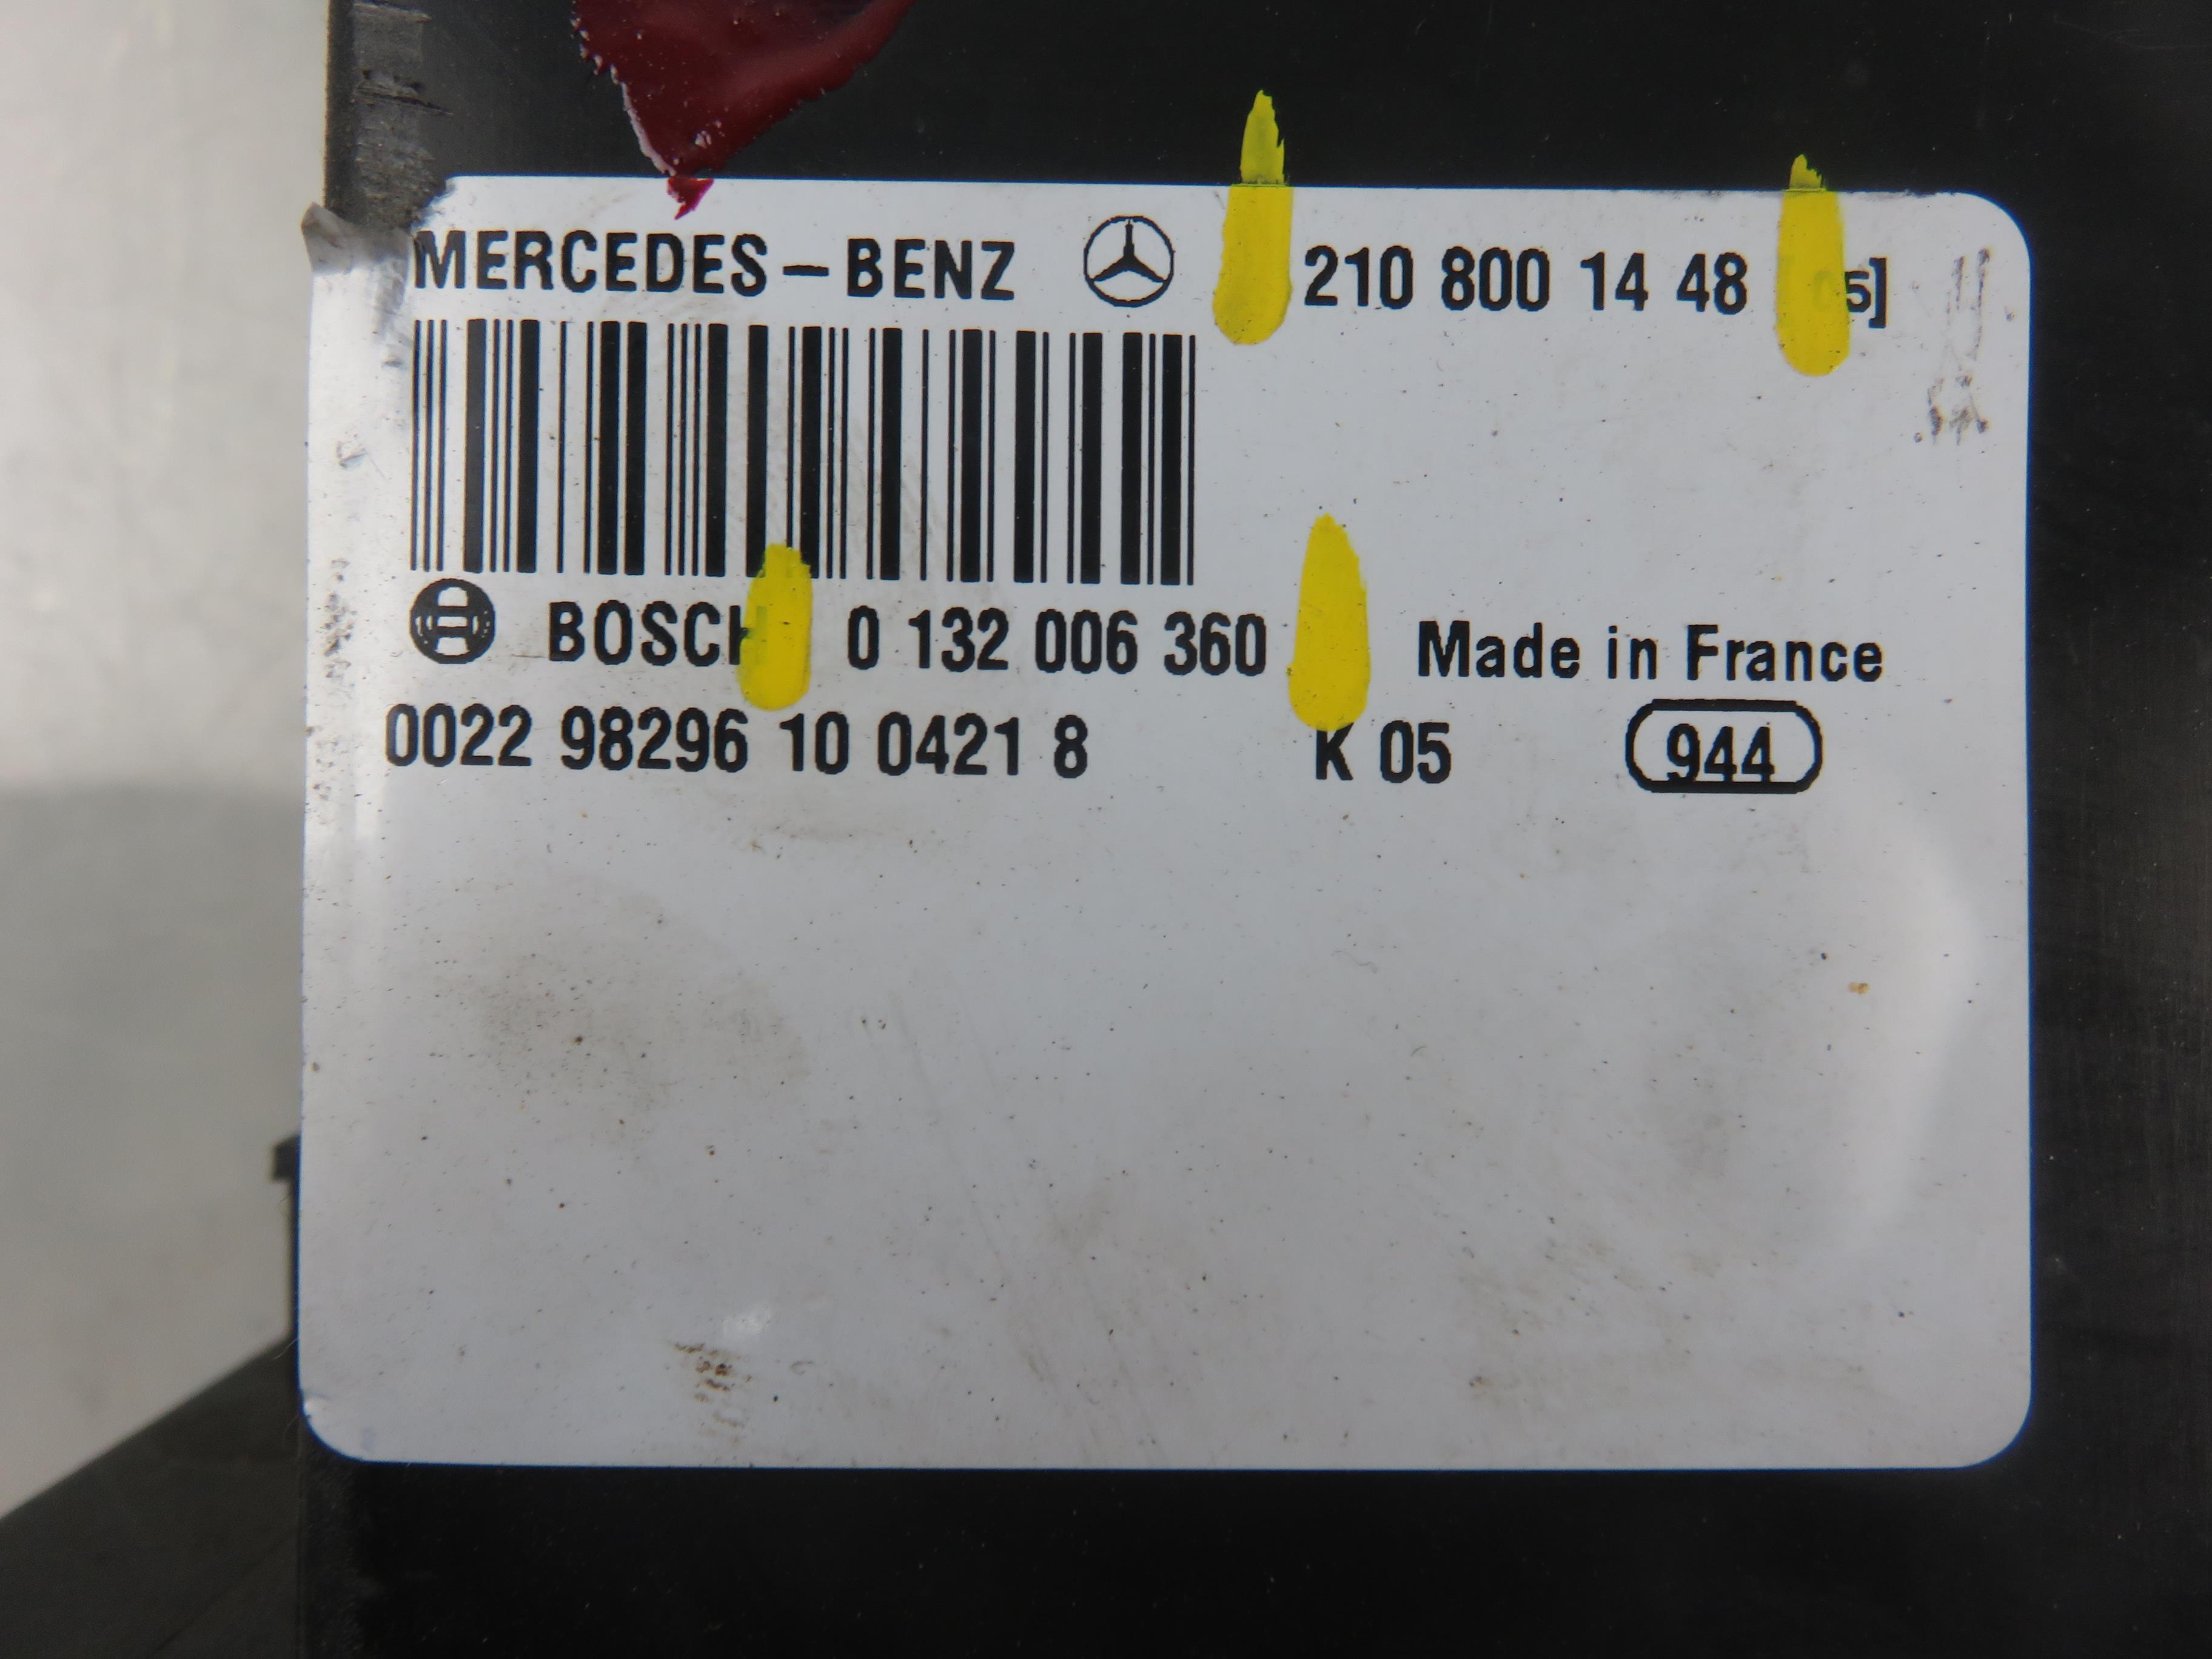 MERCEDES-BENZ CLK AMG GTR C297 (1997-1999) Centrinio užrakto vakuuminė pompa 2108001448, 0132006360 24262544